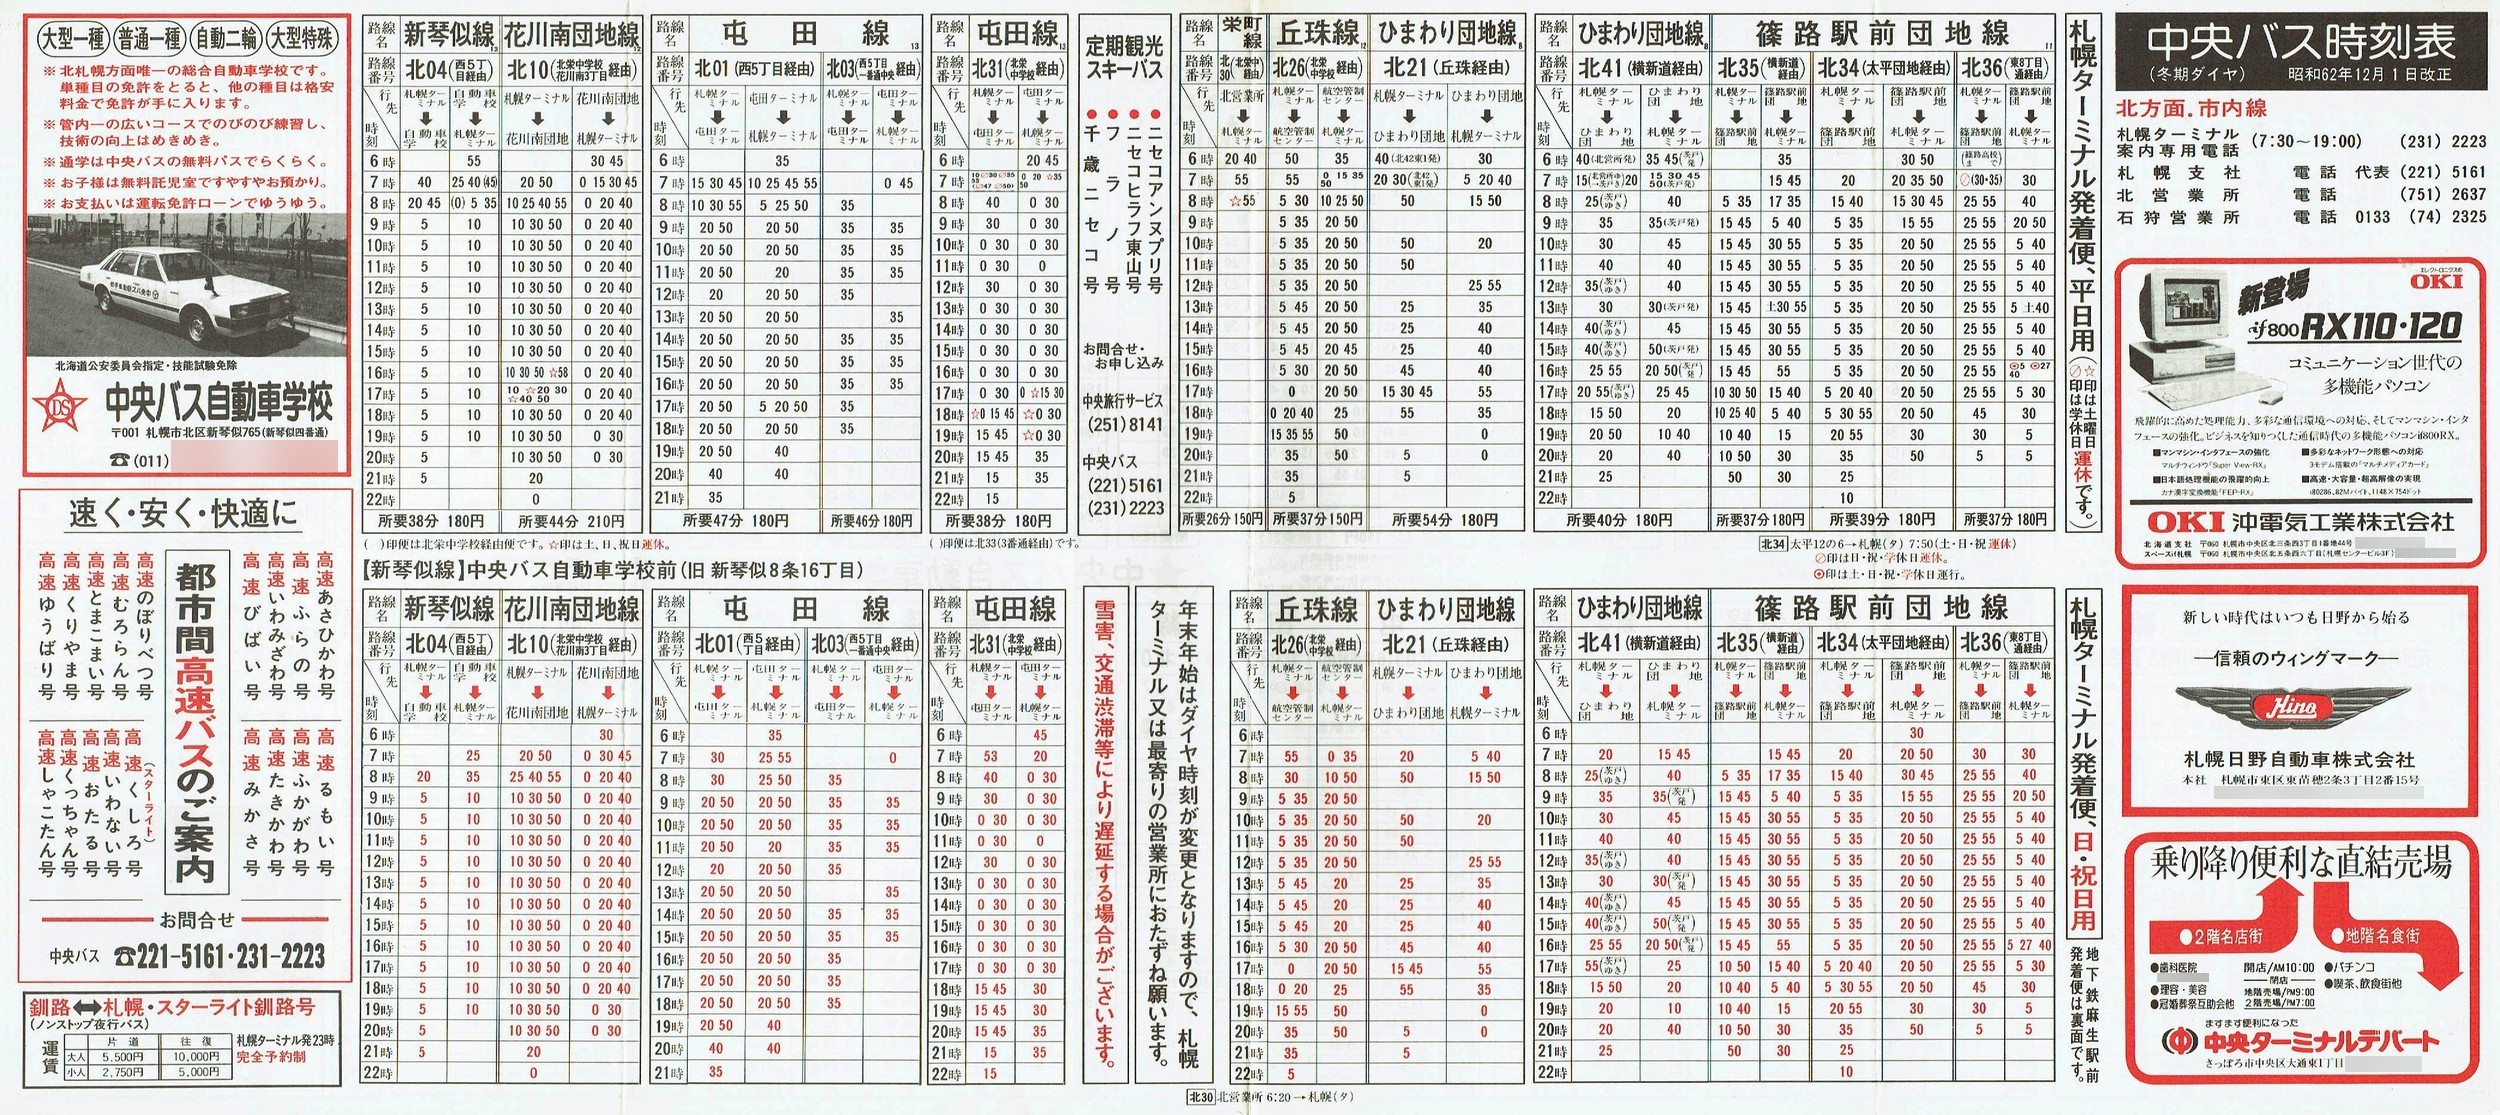 1987-12-01改正_北海道中央バス(札幌)_札幌市内線北方面時刻表表面